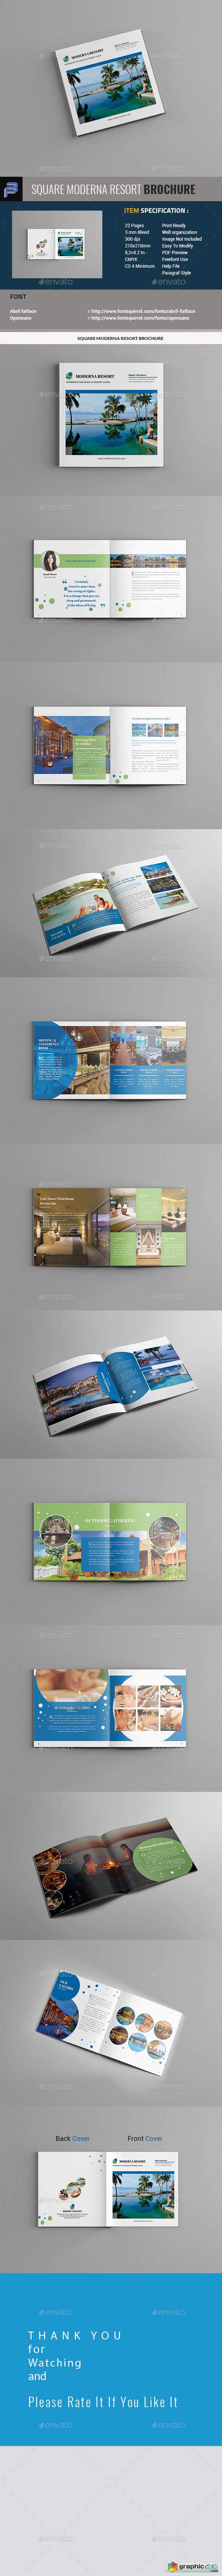 Moderna Resort Brochure